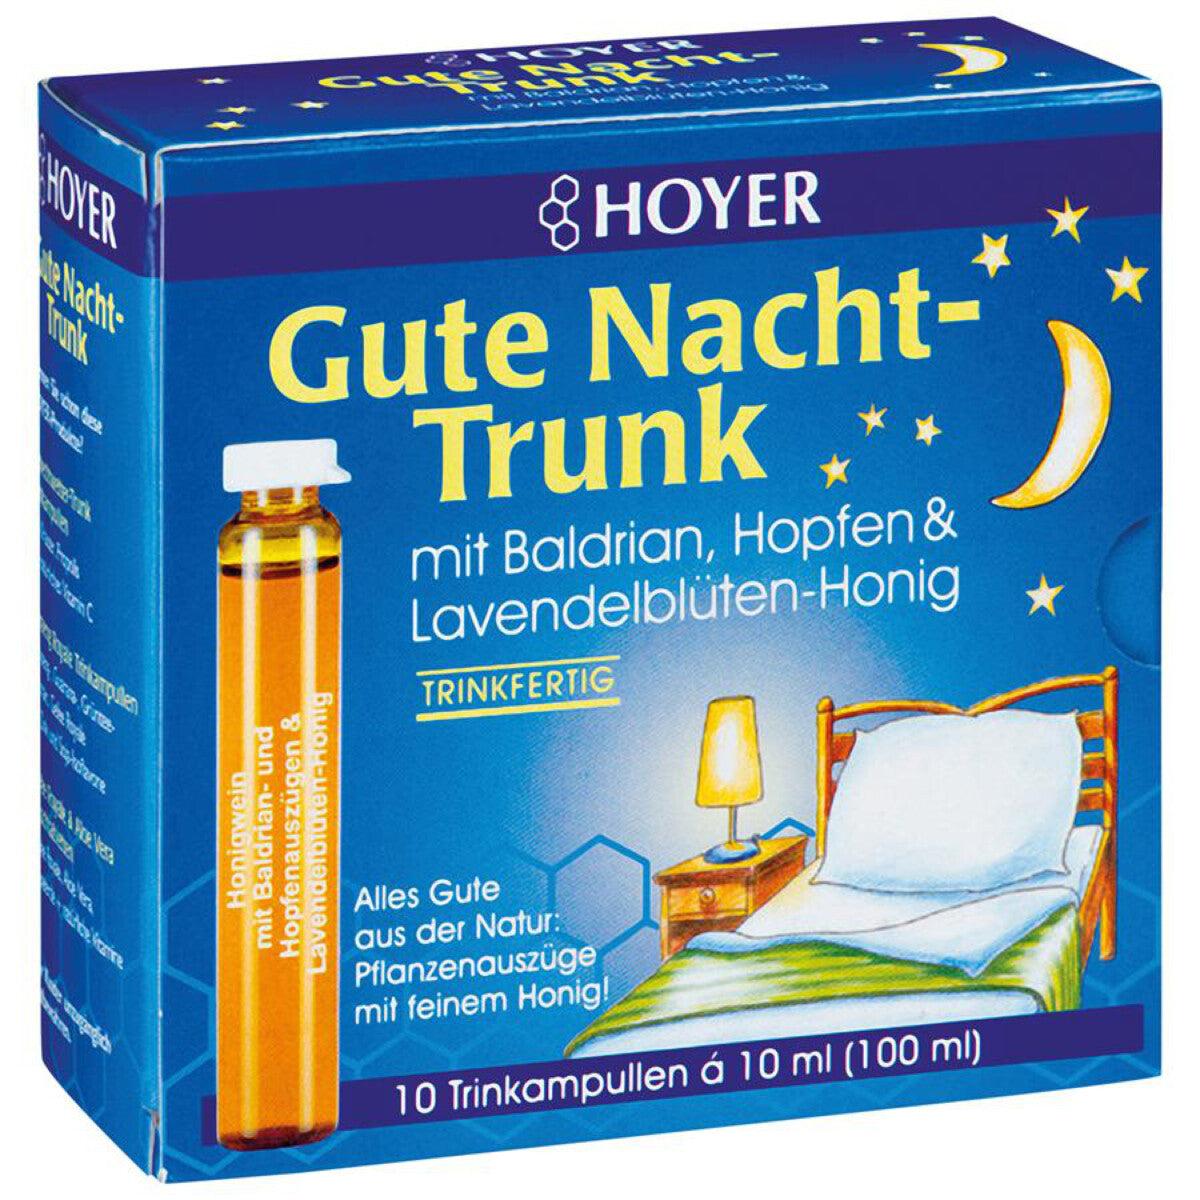 HOYER Gute Nacht-Trunk - 100 ml